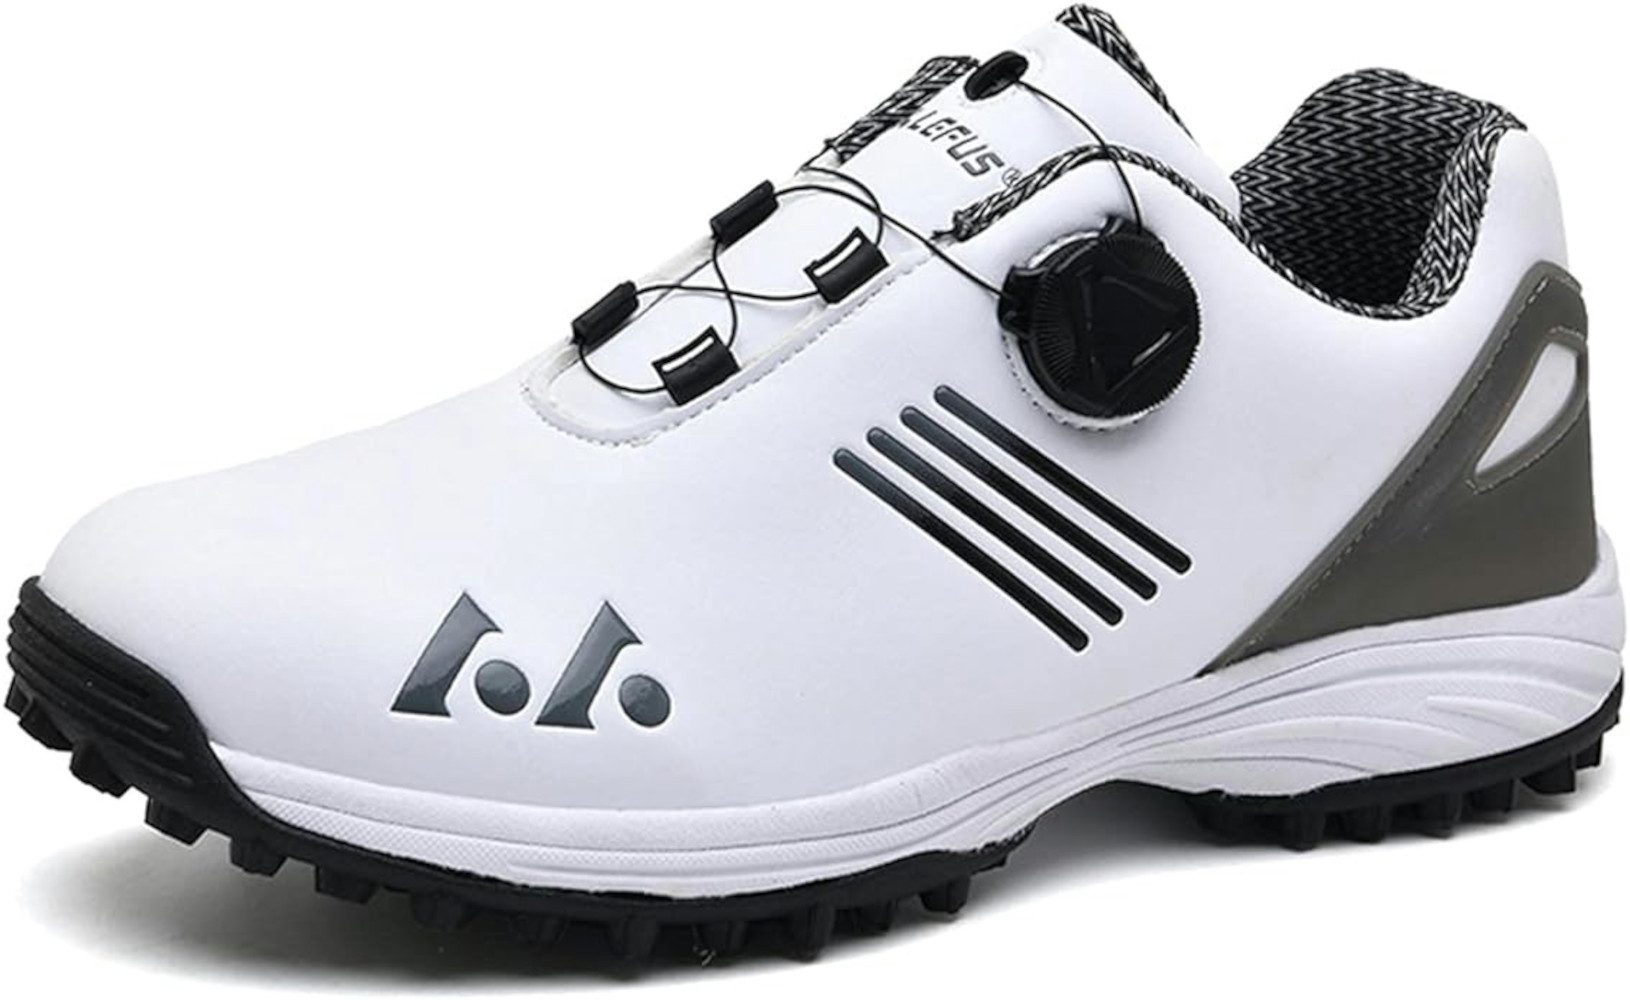 UE Stock Herren wasserdichte Golfschuhe mit Lace System Gr. 43 Weiß Grau Golfschuh für Sportkomfort